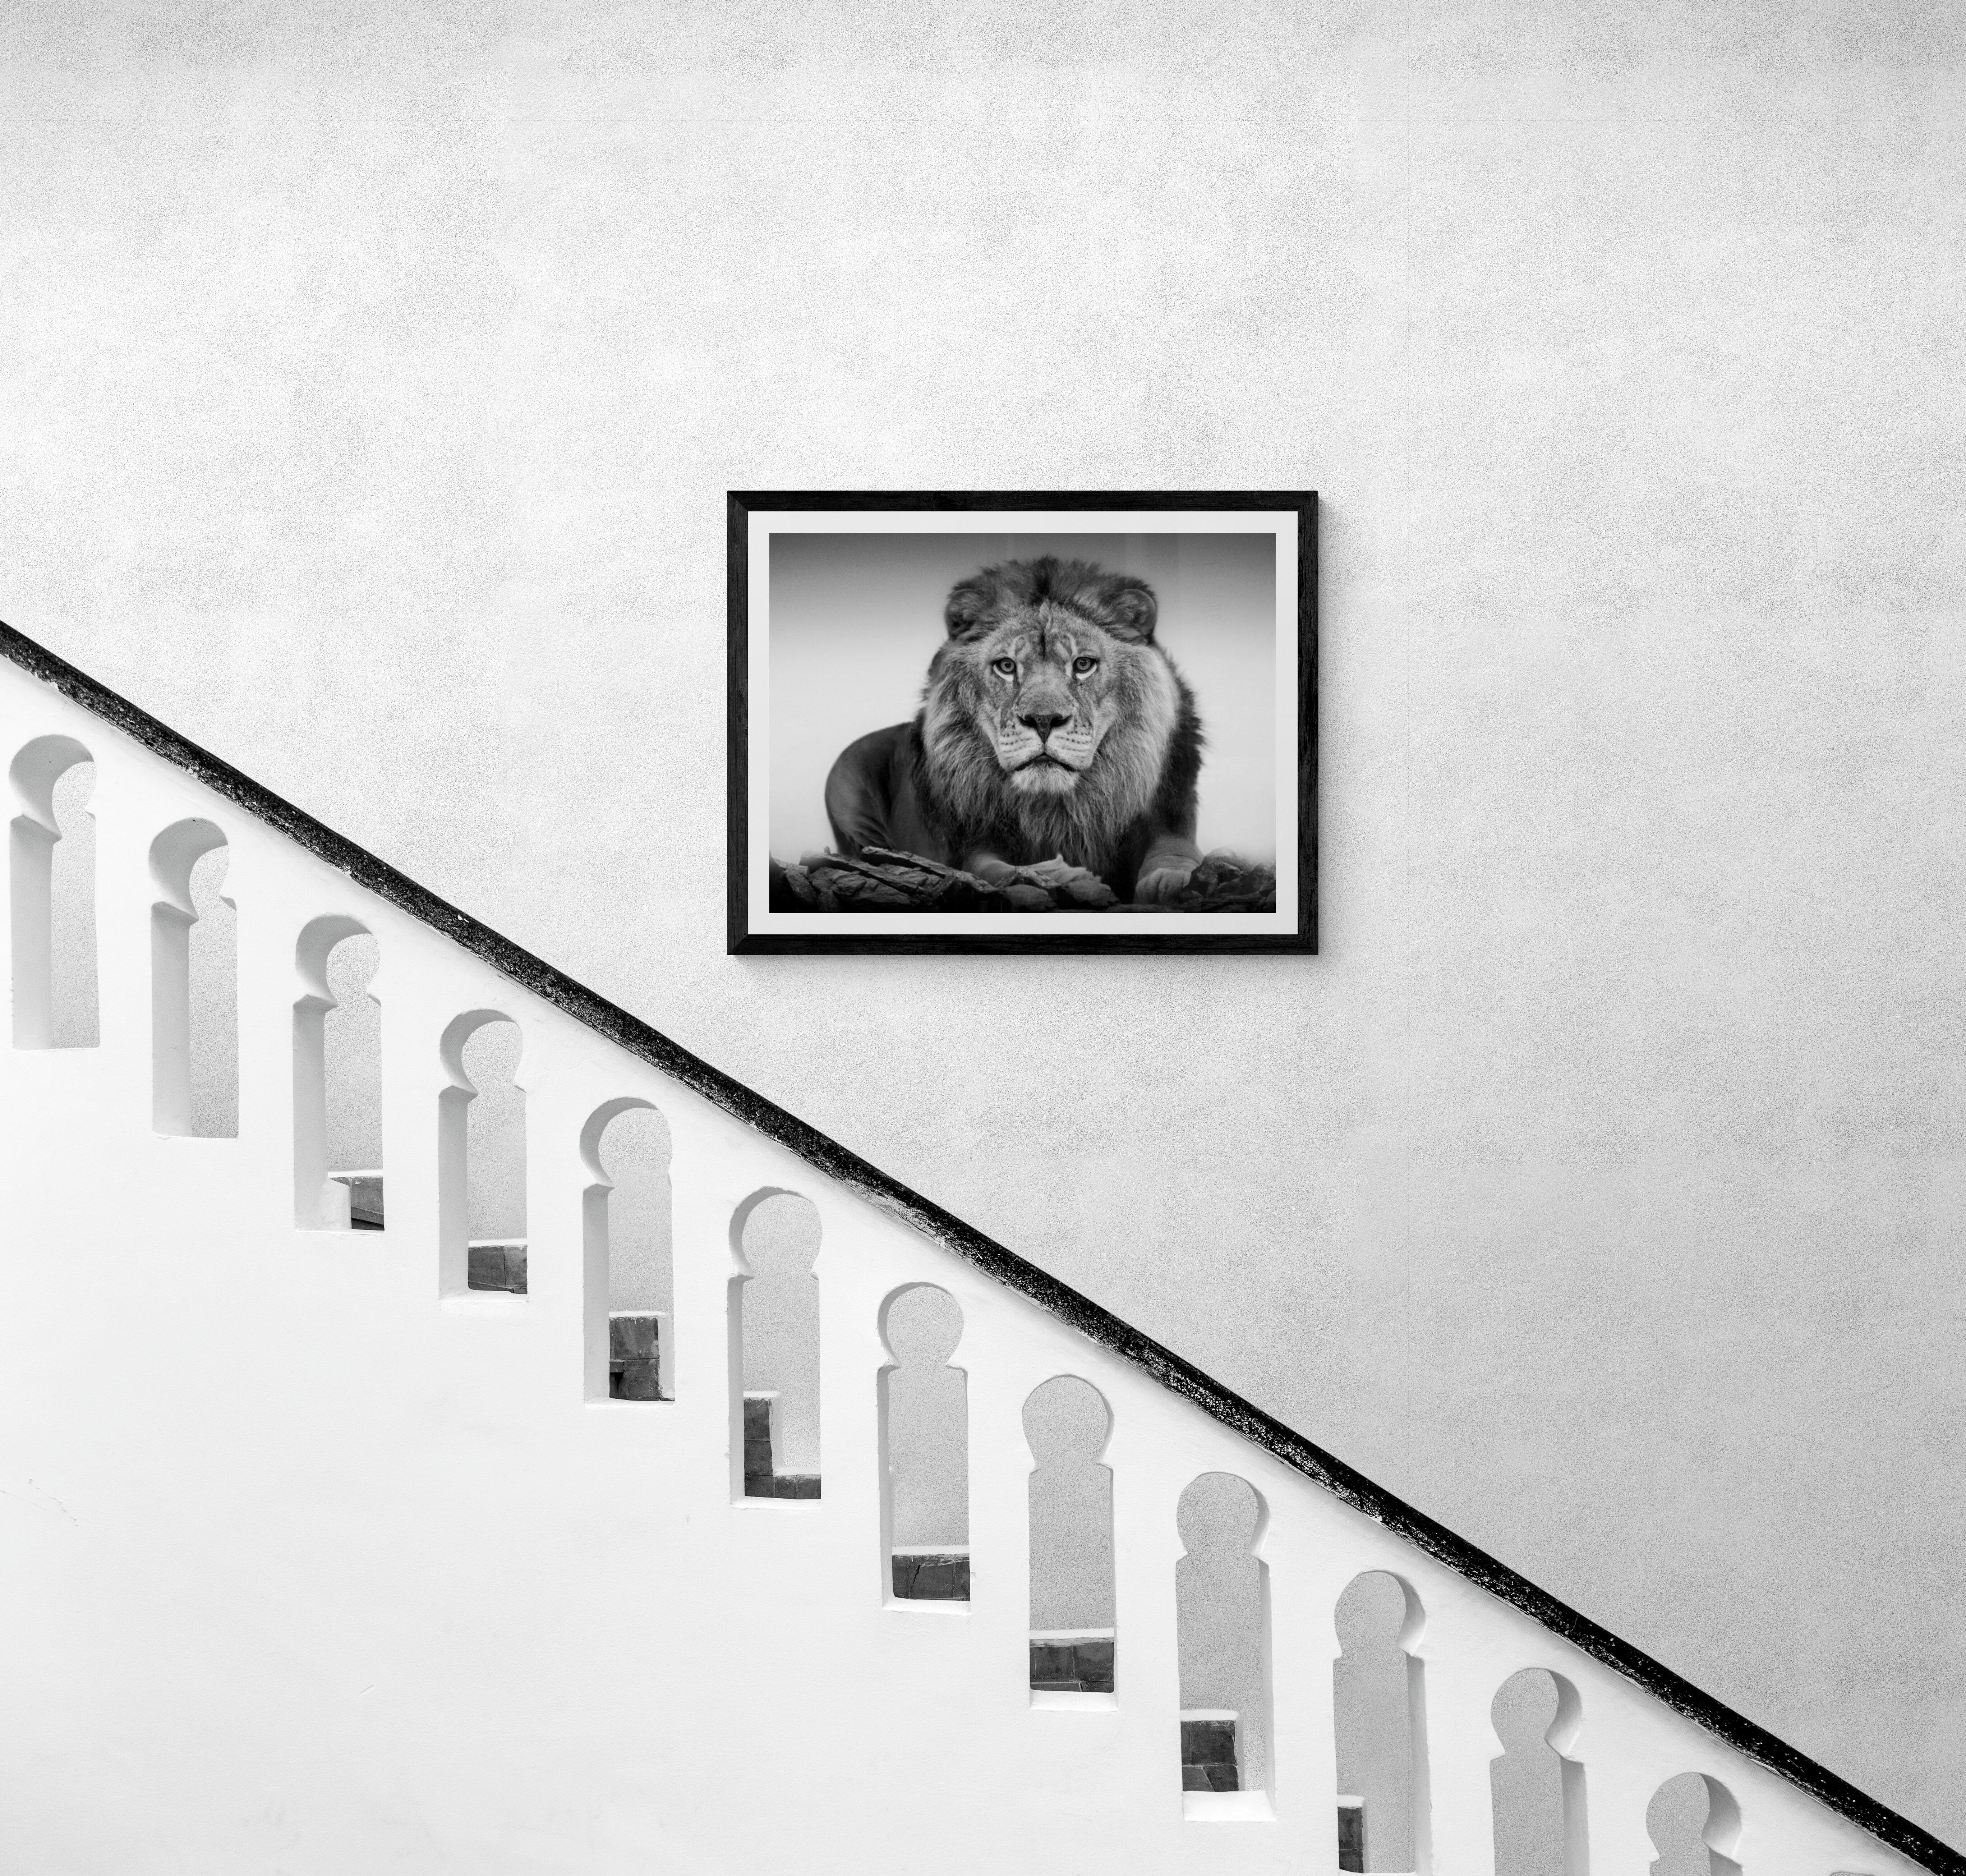  40x60 Lion Portrait,  Black and White Lion Photography Photograph Signed Art 4